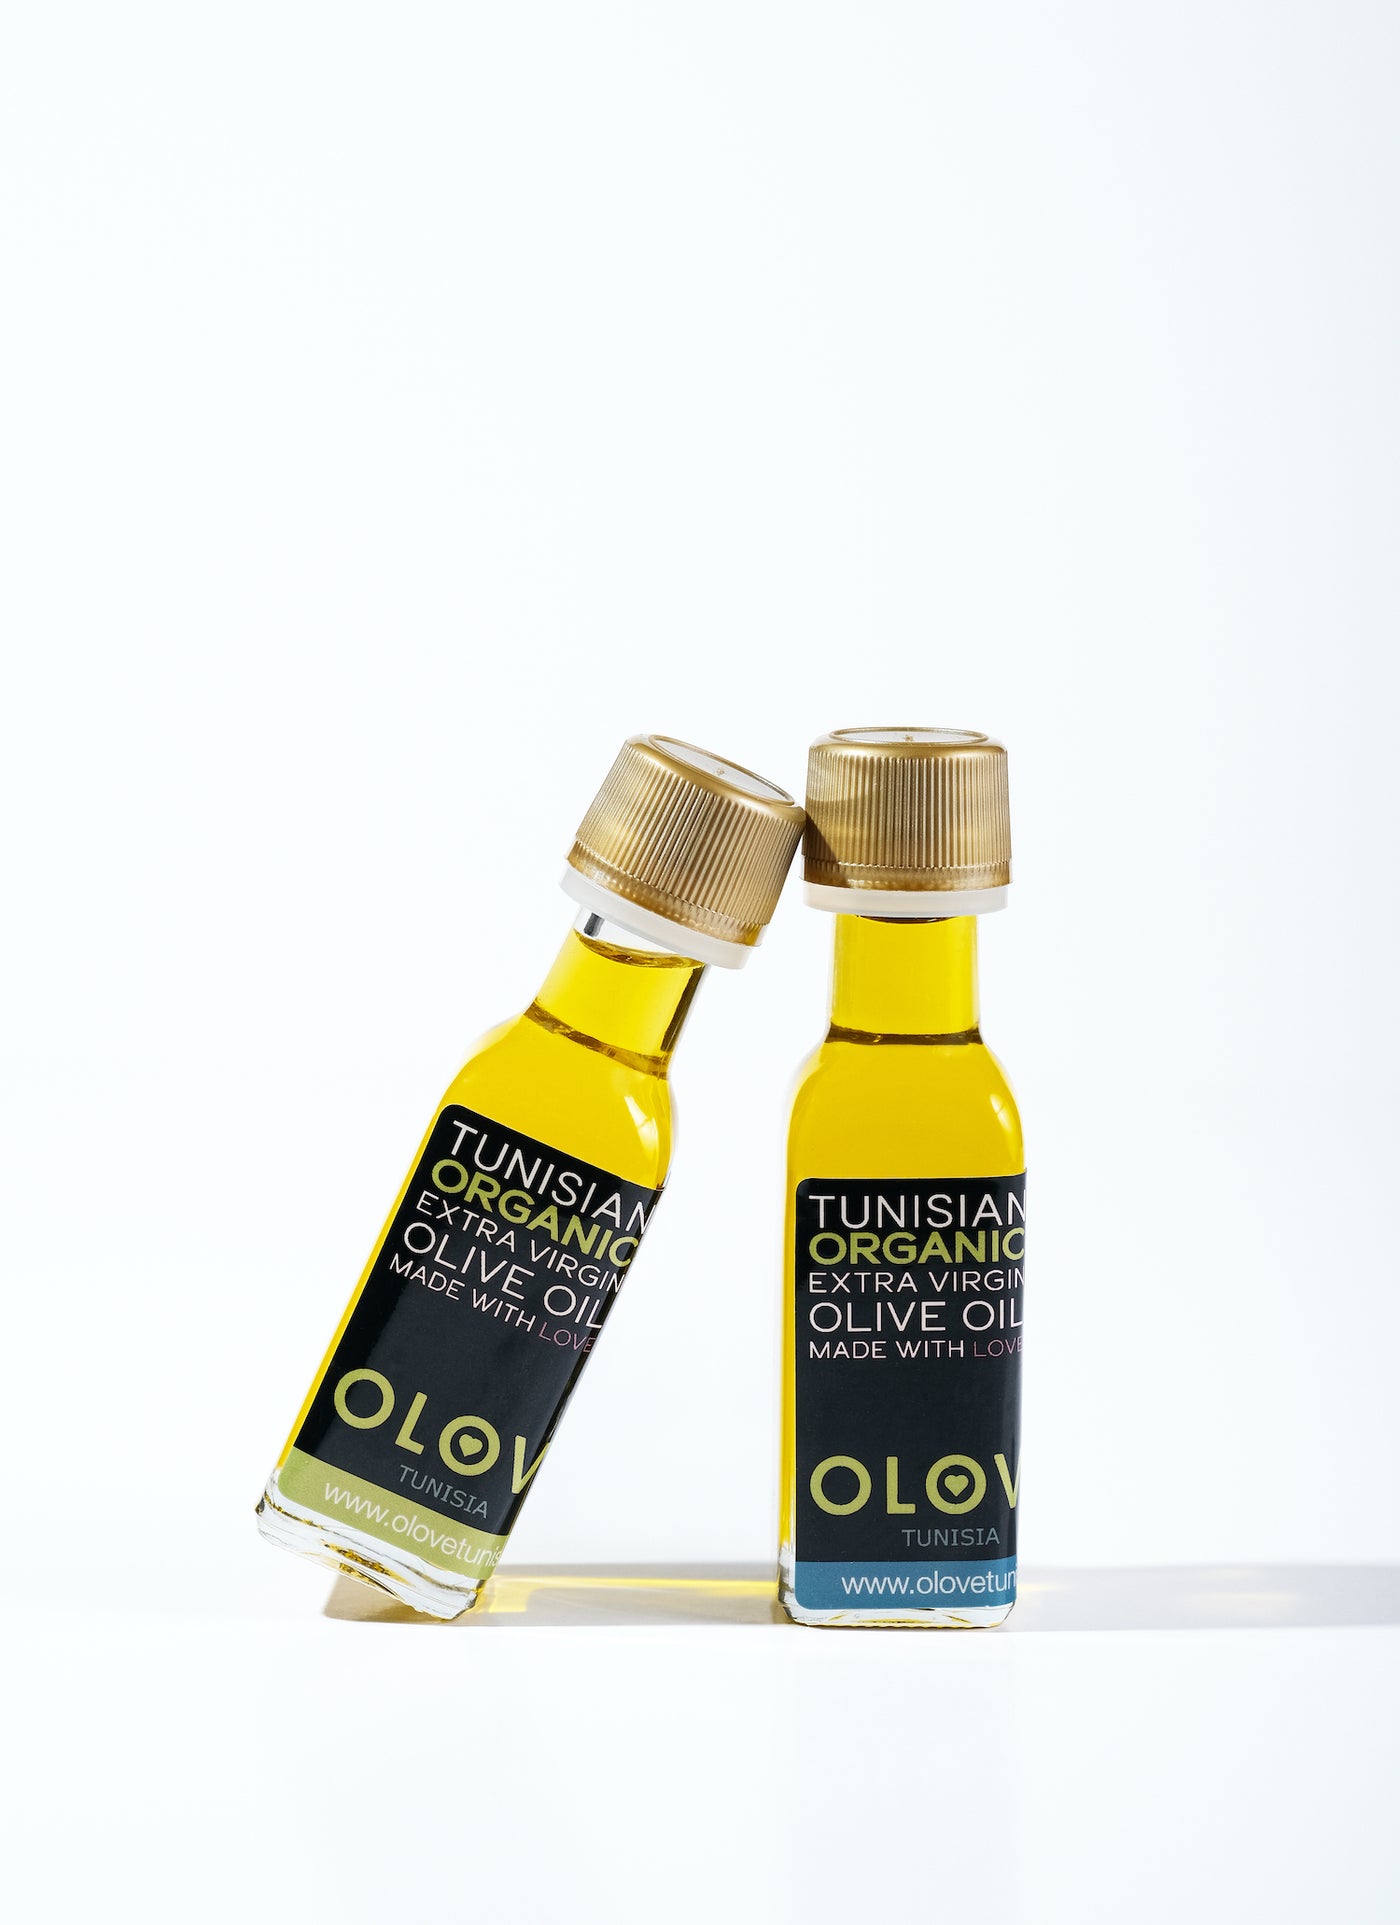 OLOVE olive oil tasting pack 2x20ml